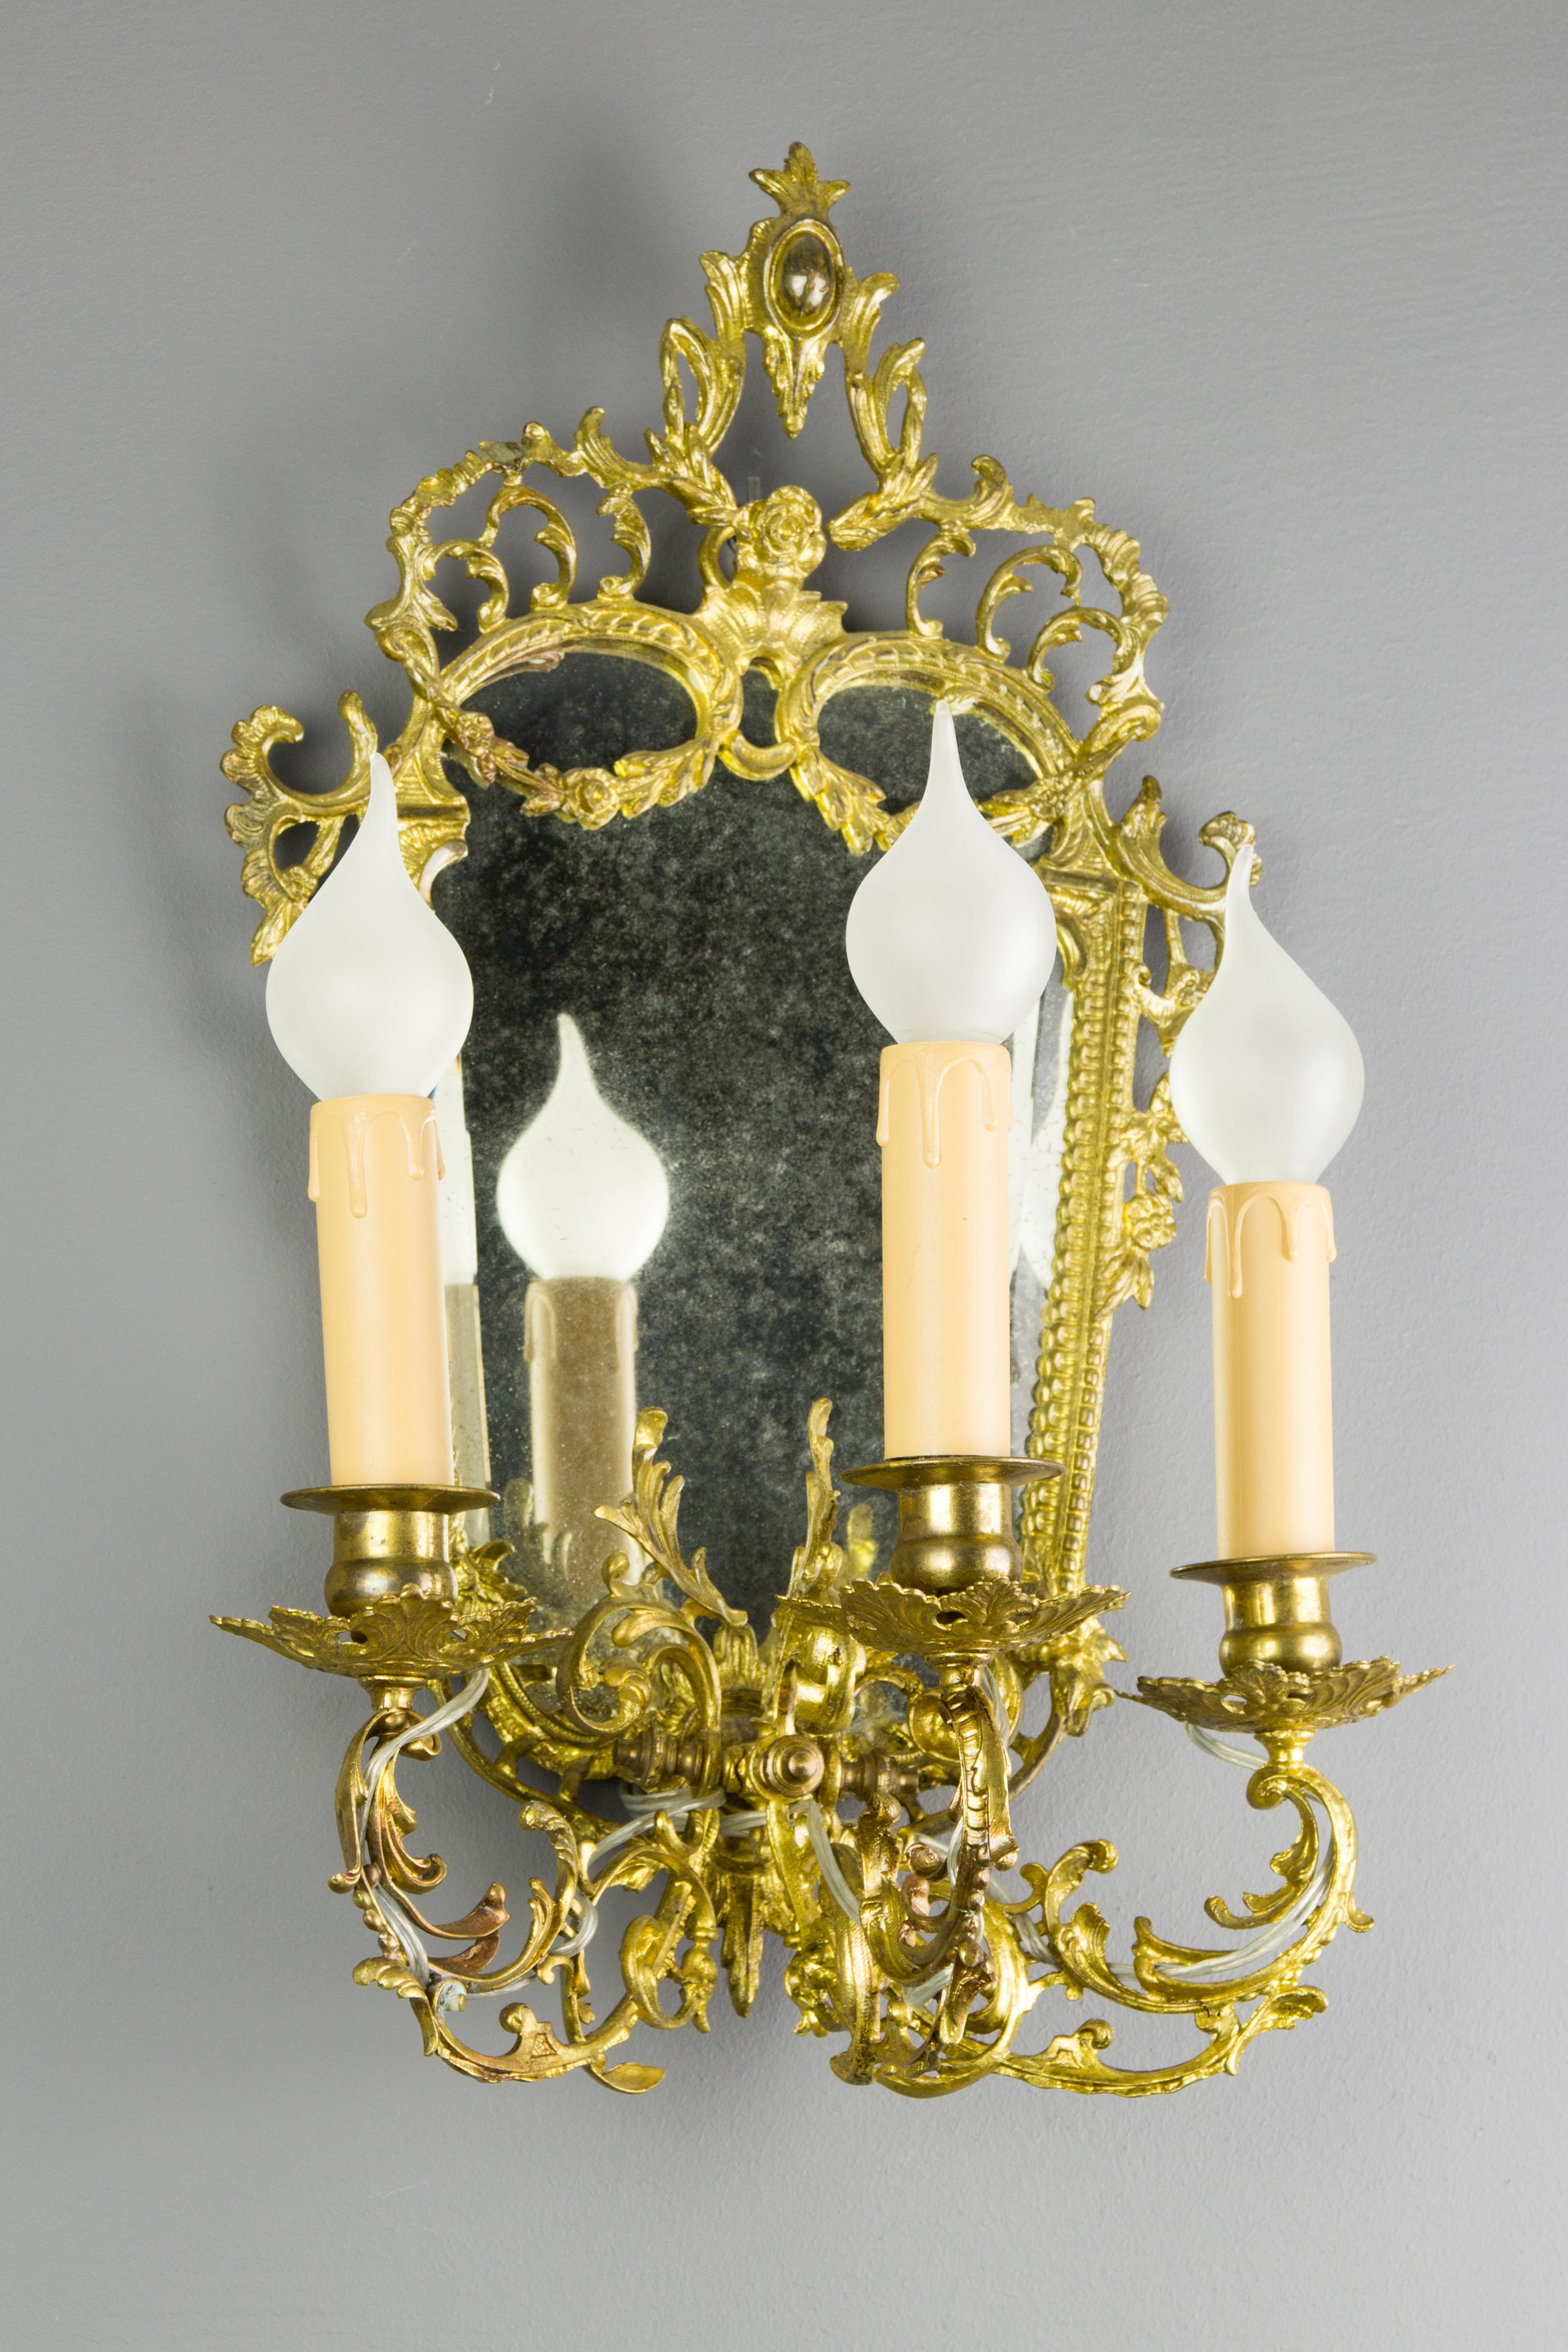 Schöne Louis XV Stil Messing und Bronze Girandole, Wandleuchte mit abgeschrägten Spiegel. Drei Arme, jeder mit einer Fassung für eine E14-Glühbirne, verziert mit Blattranken und Blumen, Frankreich, 1920er Jahre.
Abmessungen: Höhe 45 cm, Breite 30